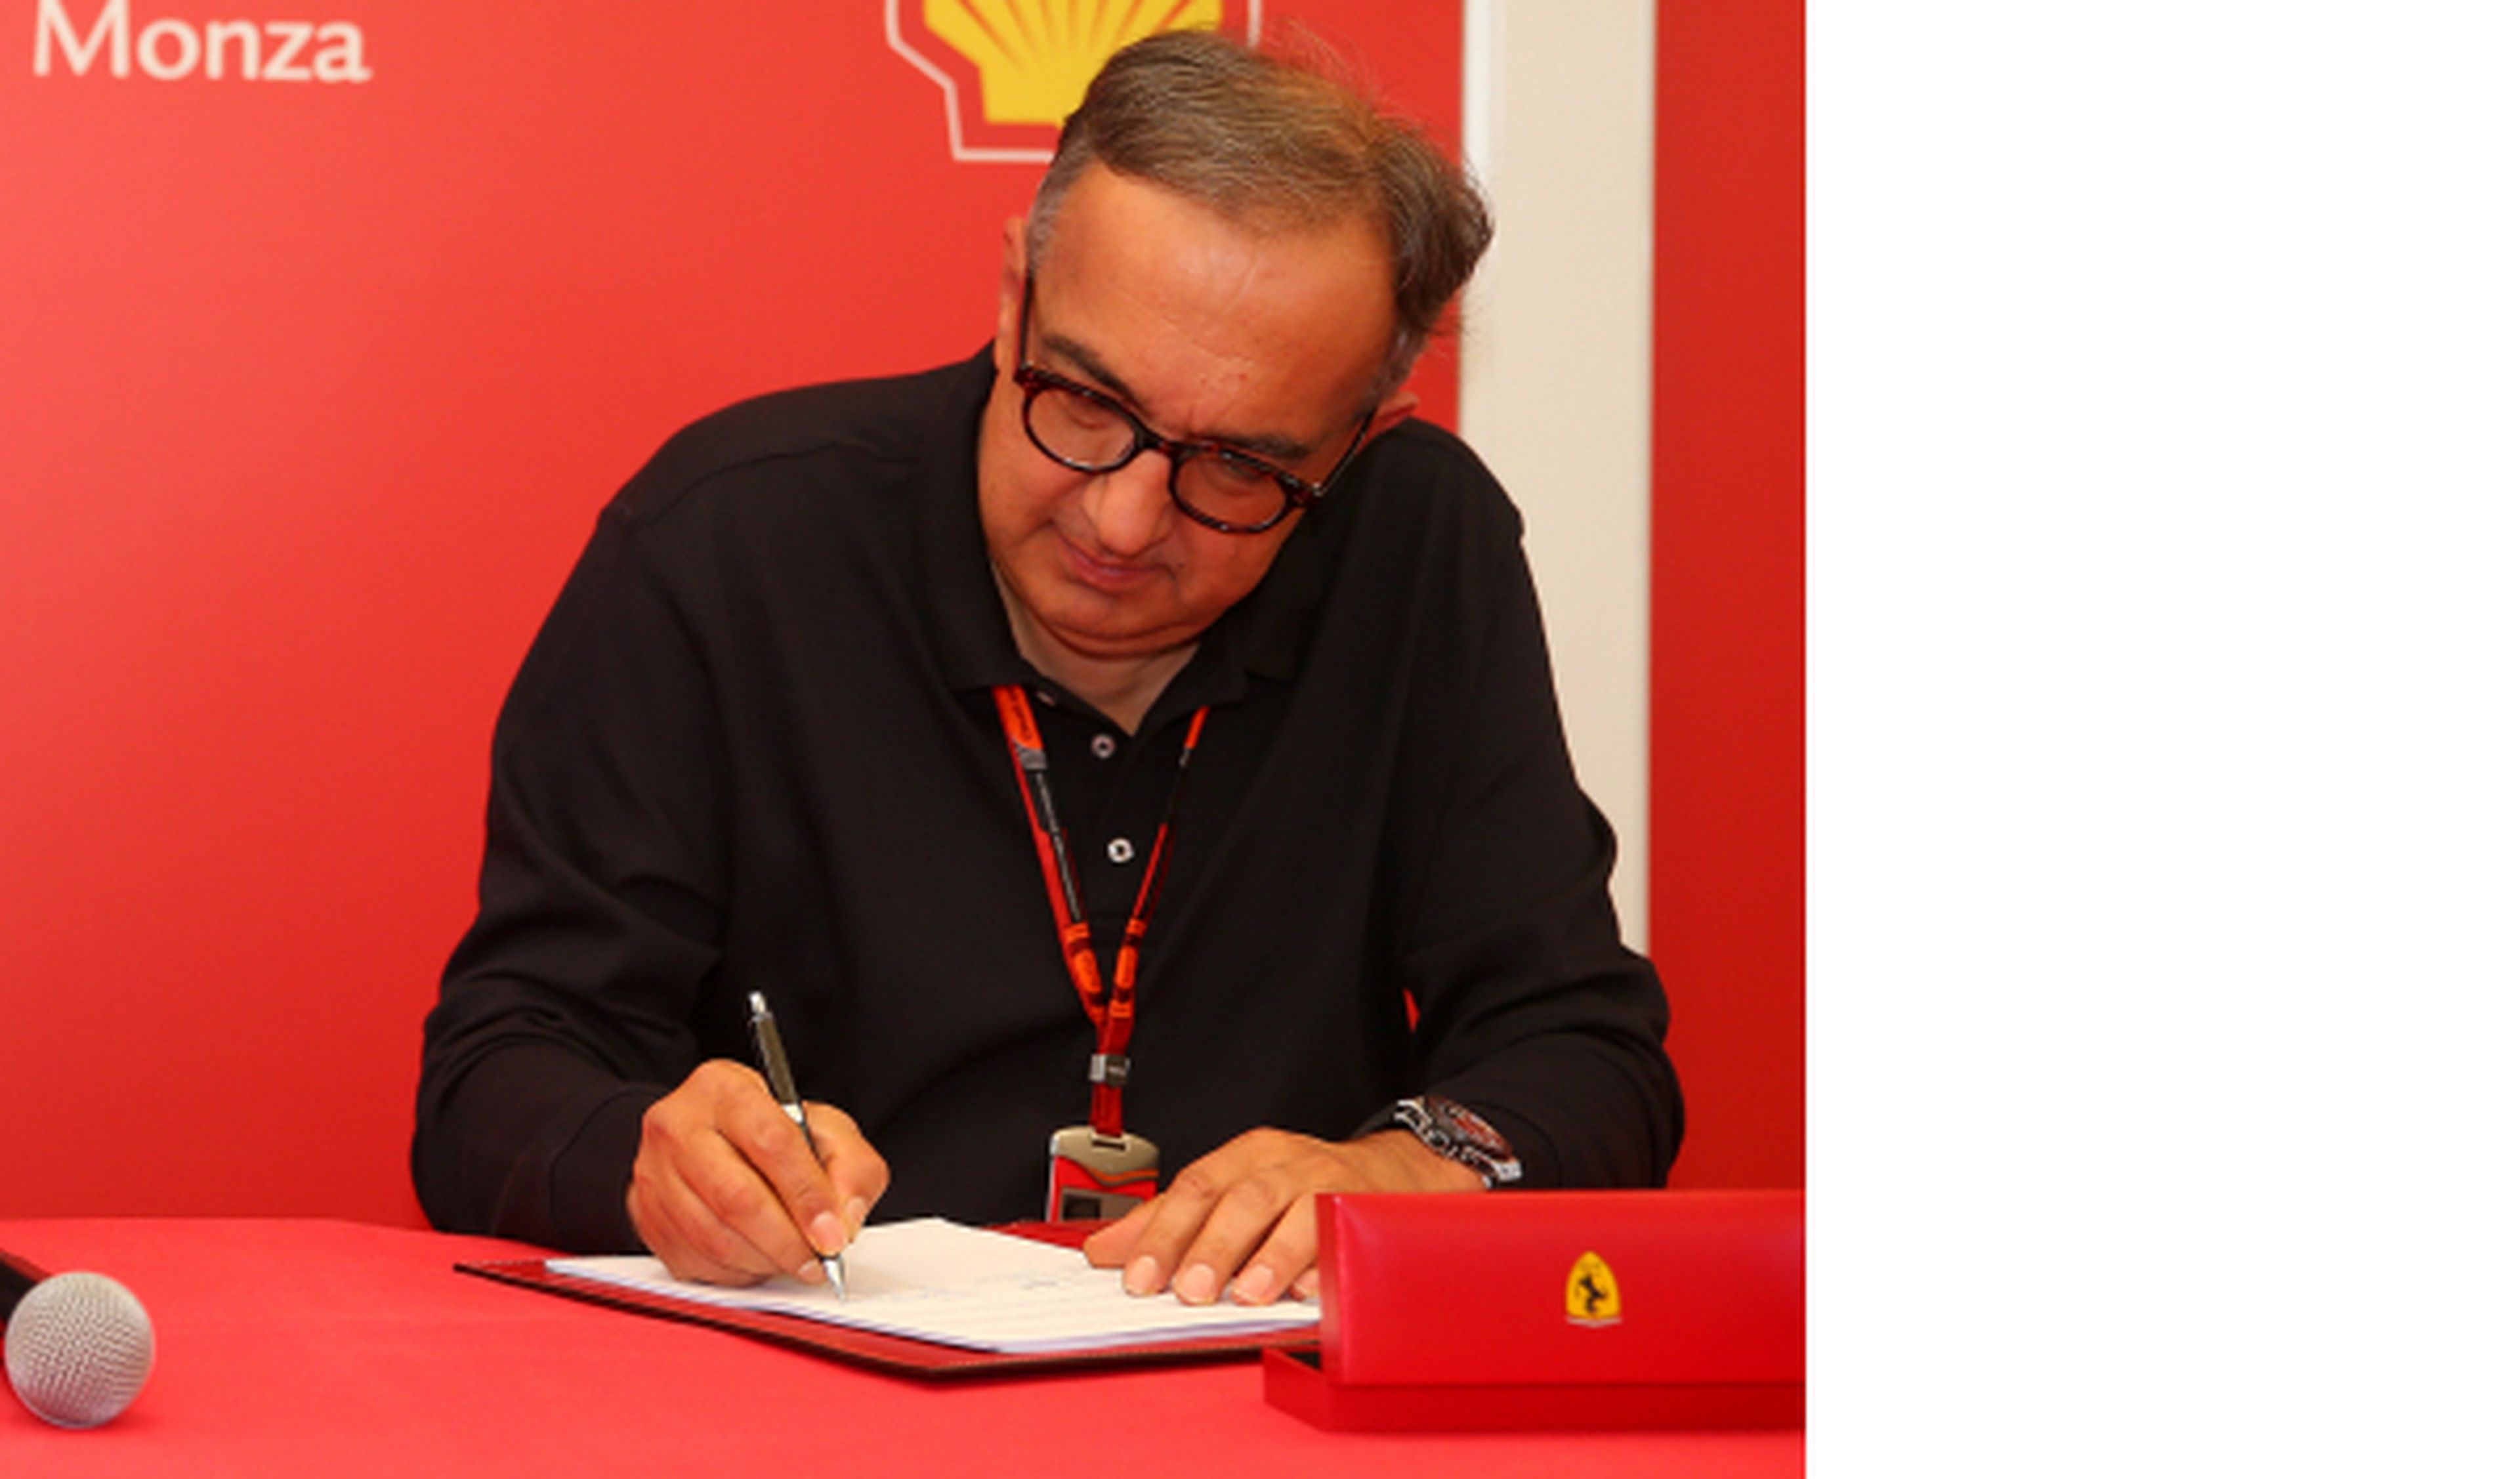 26 años después, Ferrari cambia de presidente